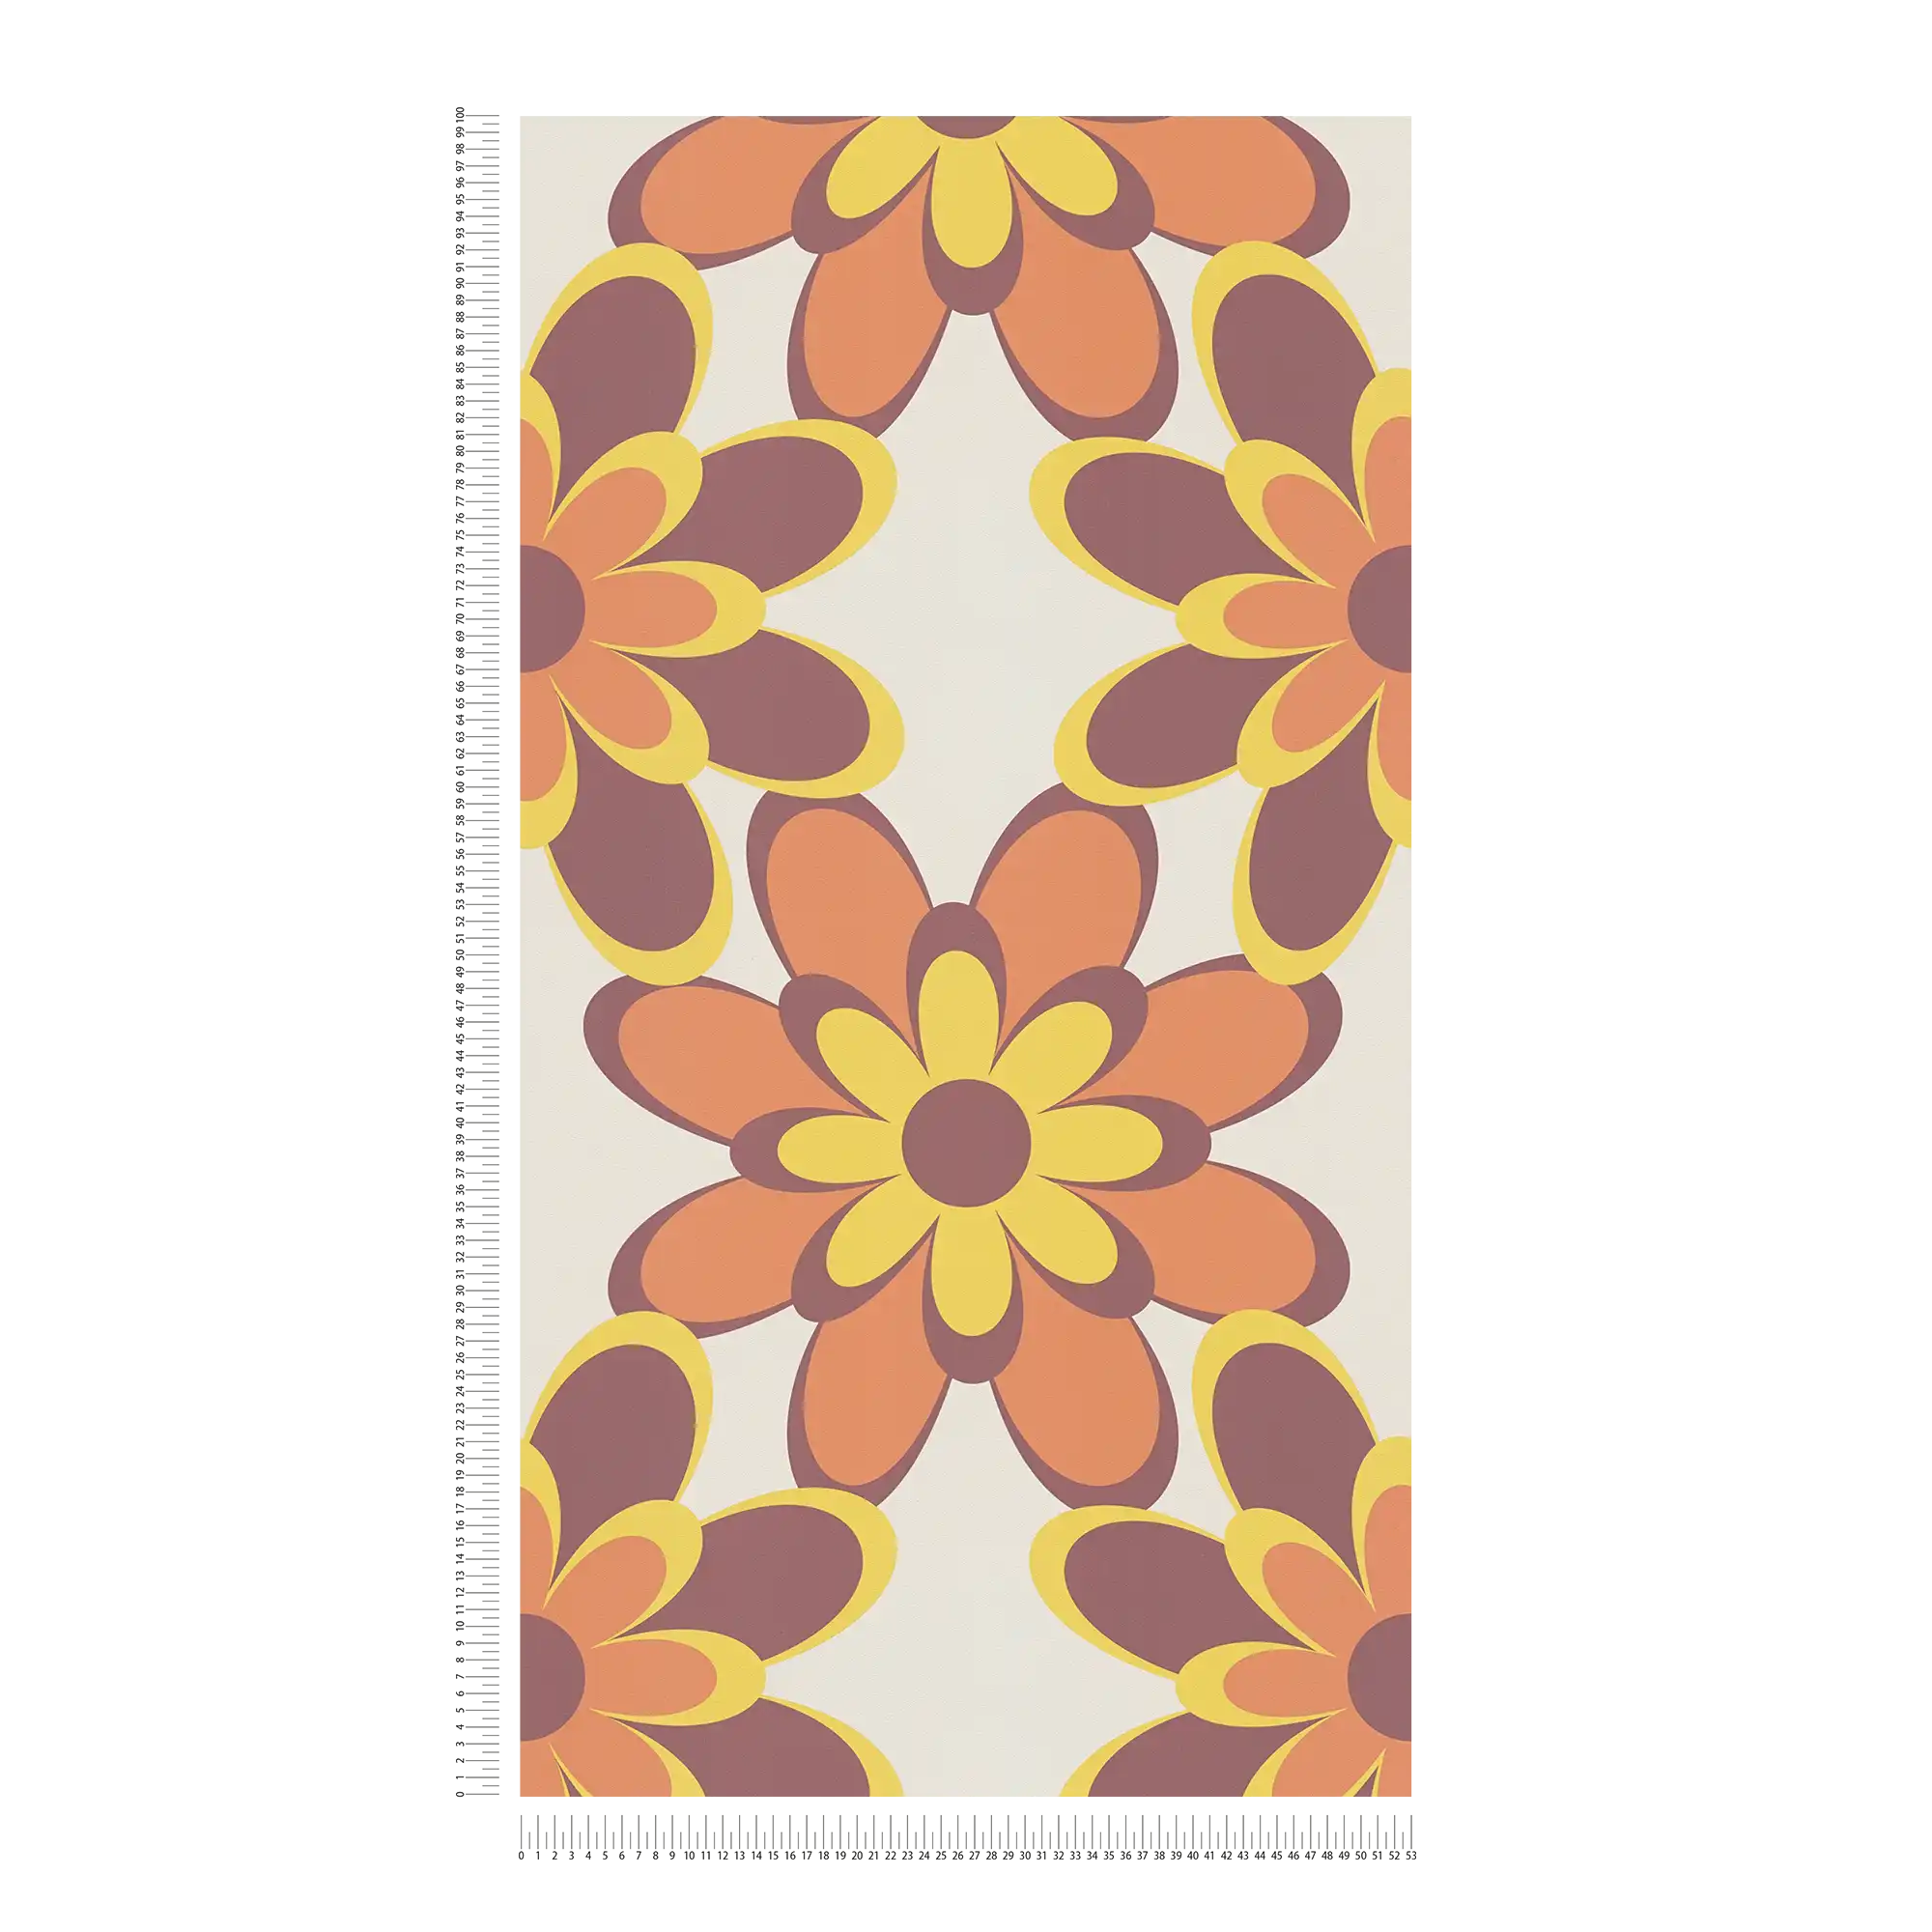             Retro behang 70s bloemenpatroon - oranje, geel, bruin
        